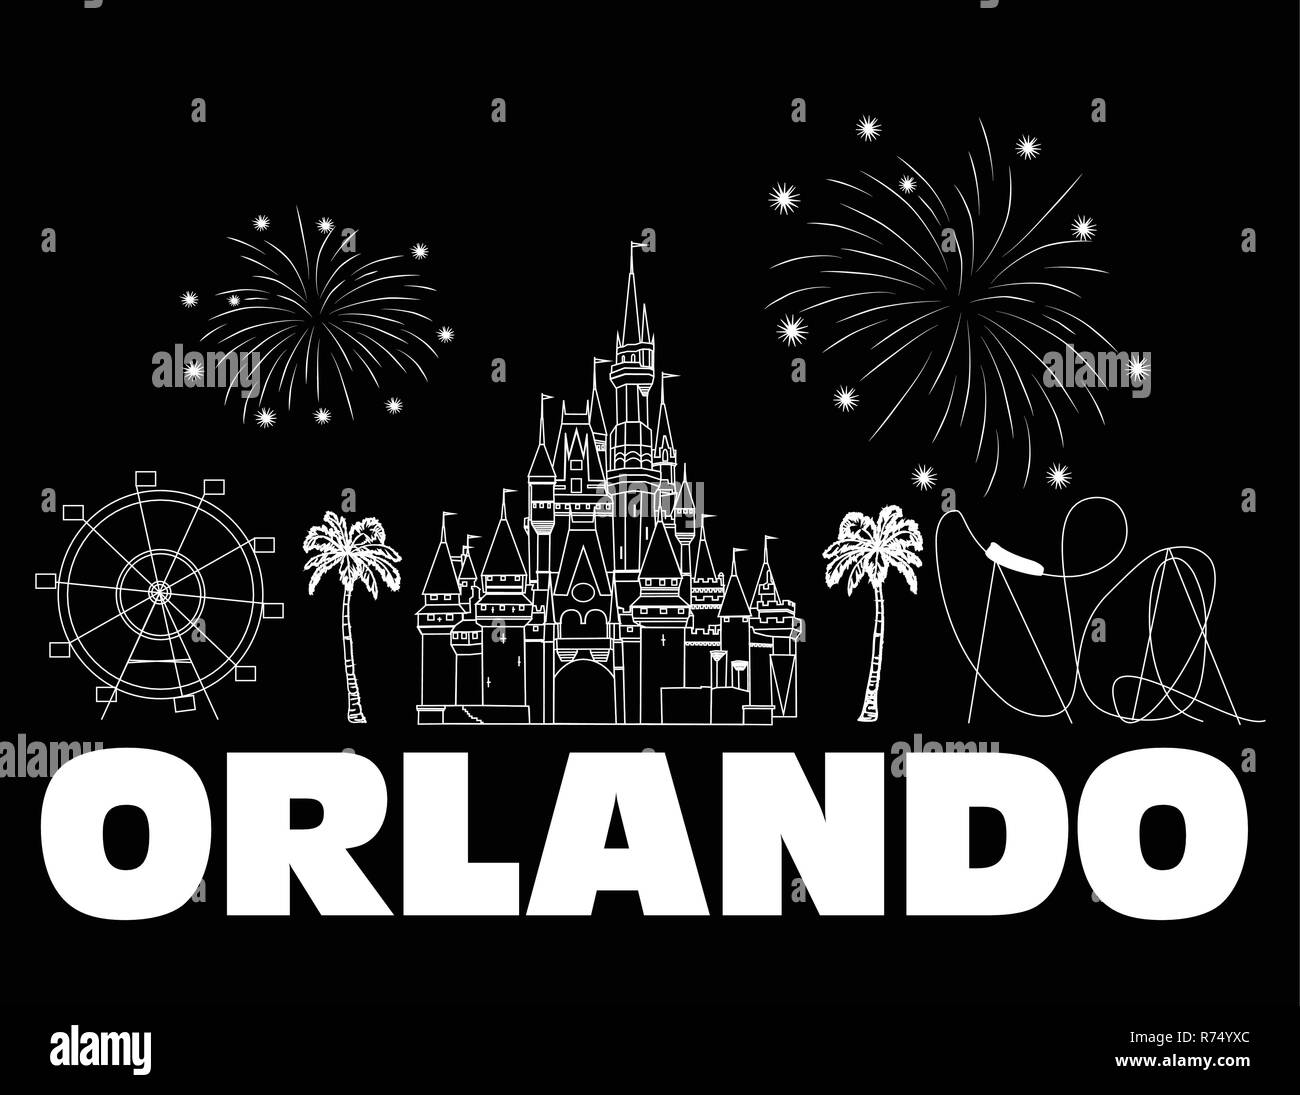 Orlando, weisser Schrift auf schwarzem Hintergrund. Vektor mit Reisen Symbole und Feuerwerk. Reisen Postkarte.. Stock Vektor